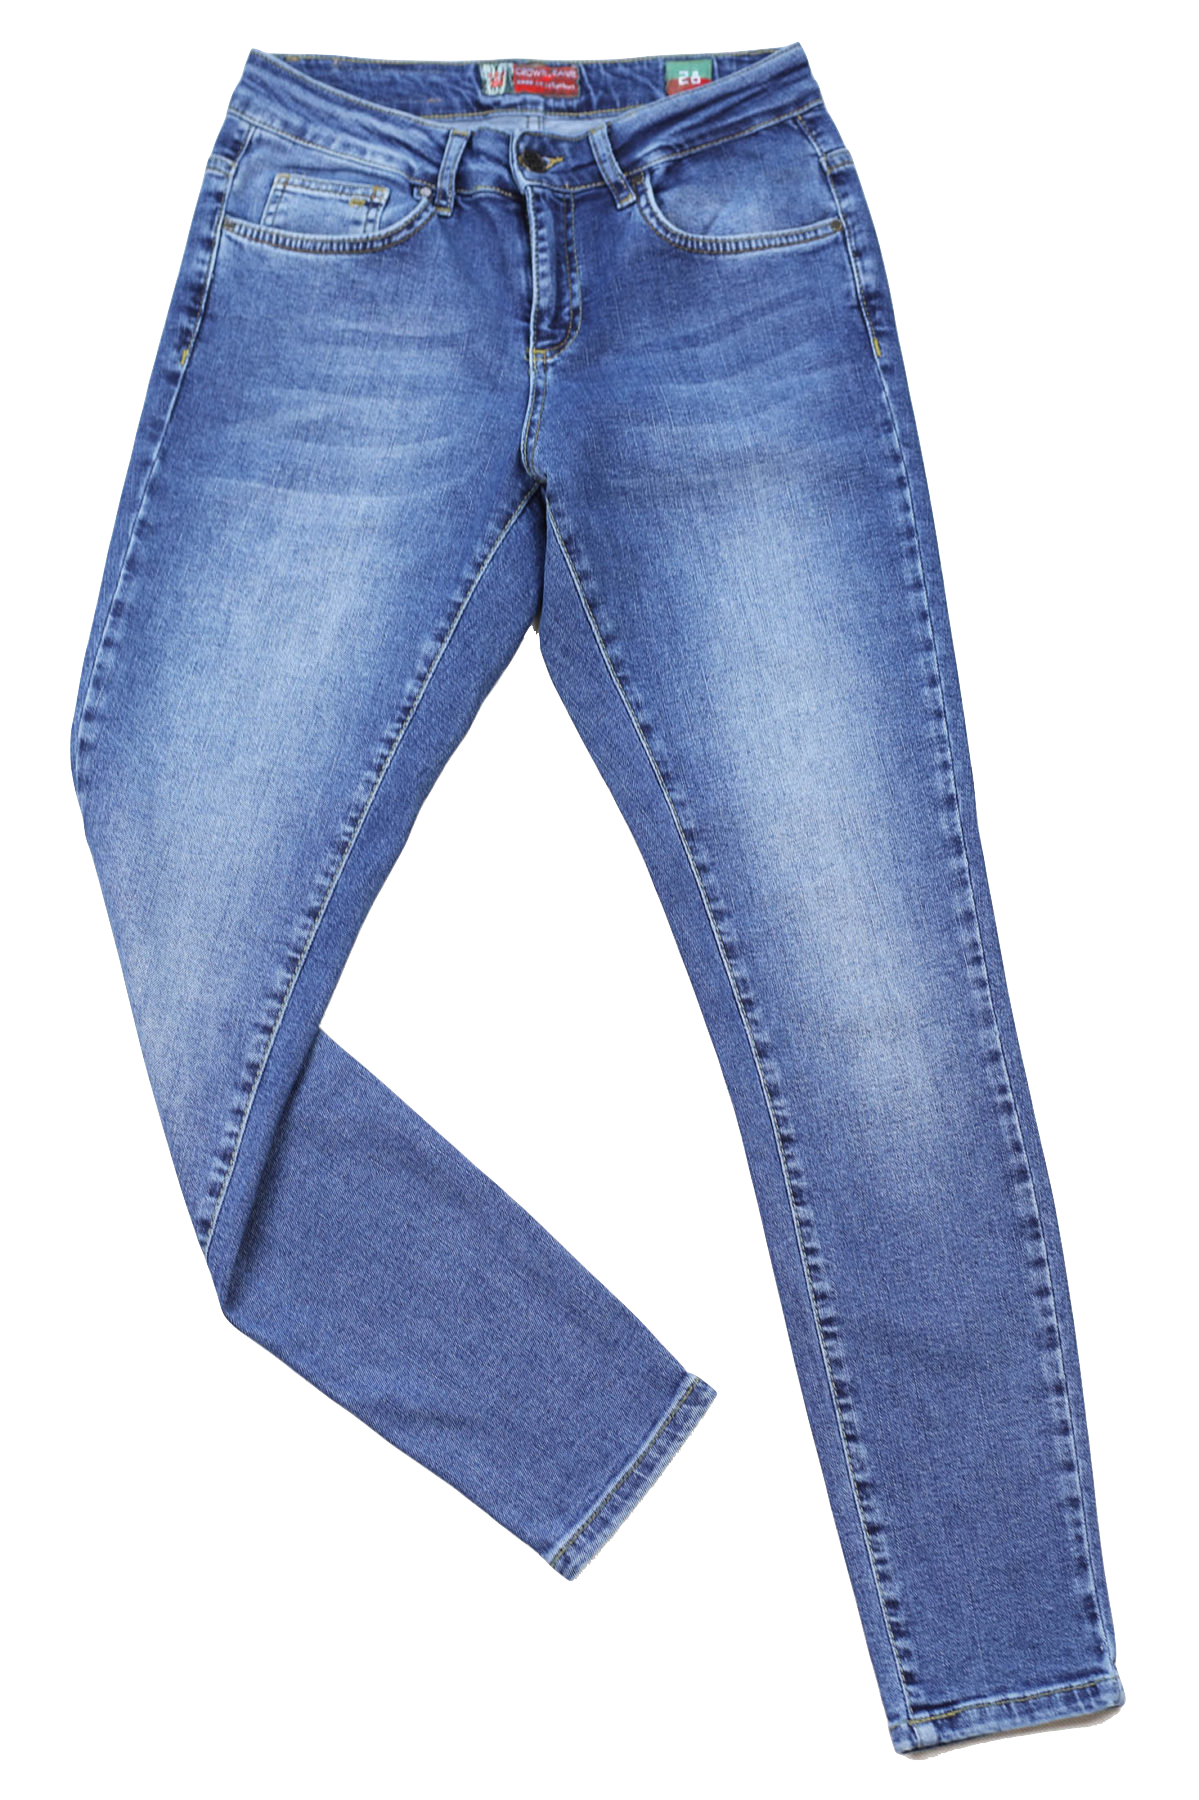 Damskie jeansy comfort strecz, niebieskie, mocne przetarcia, nogawka zwężana – slim